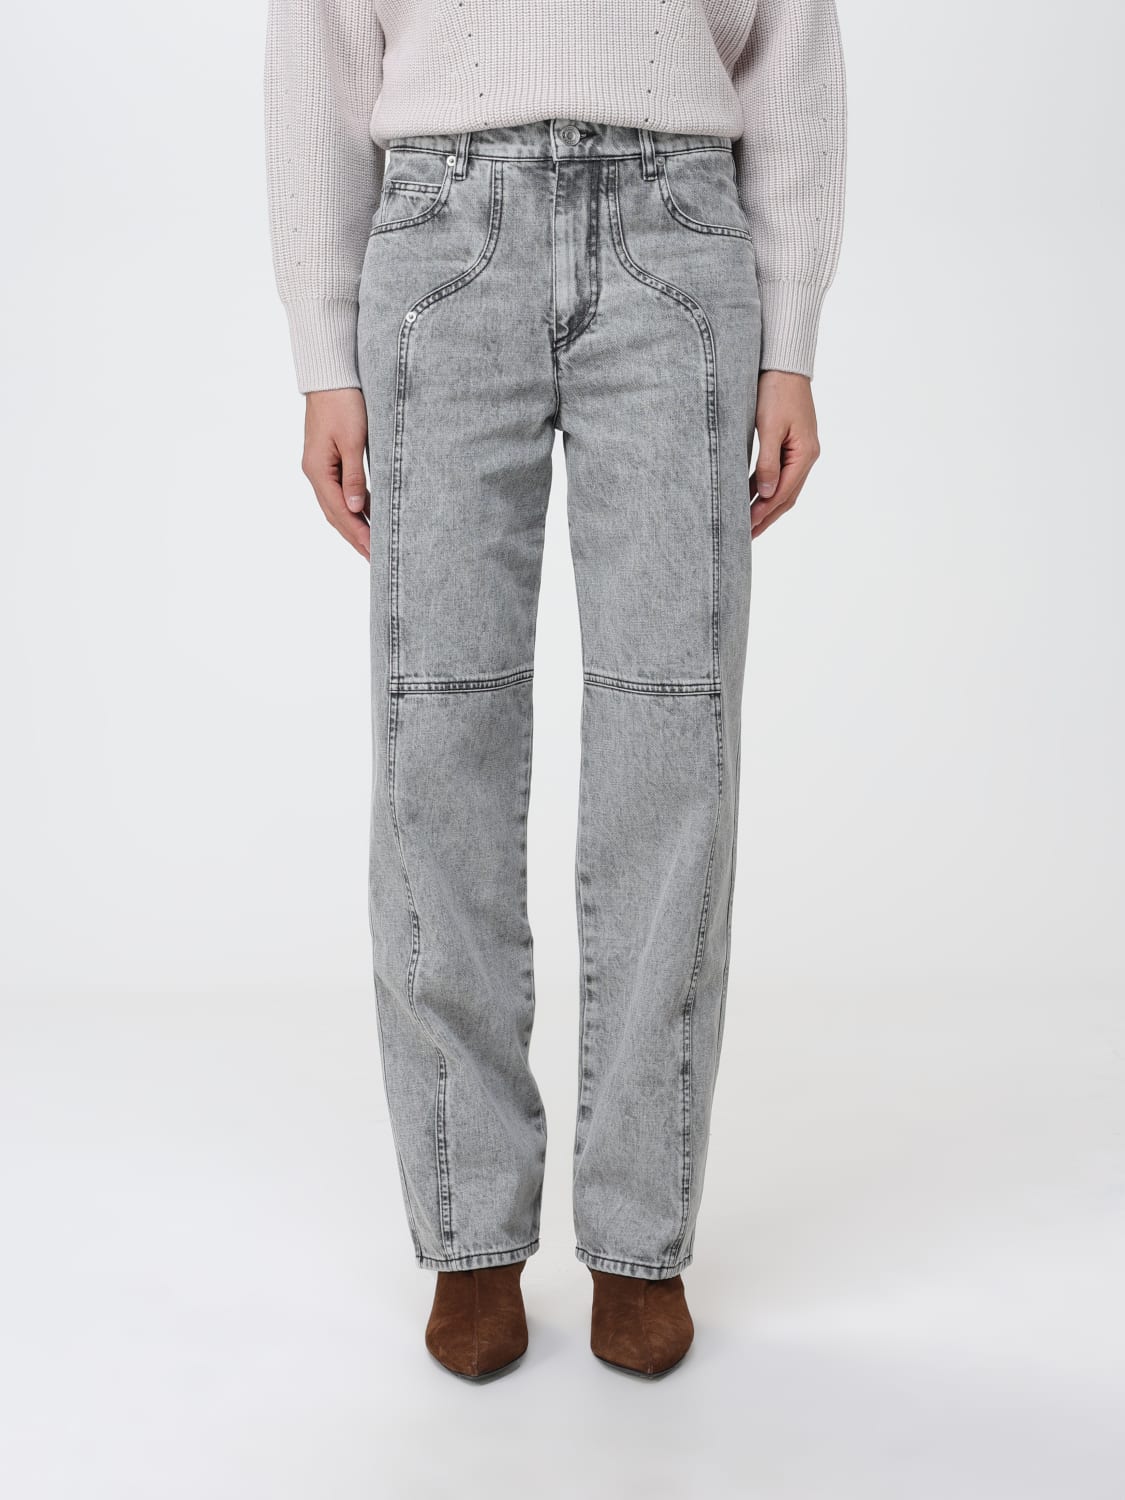 ISABEL MARANT ETOILE: jeans in denim - Grey | ISABEL MARANT ETOILE ...